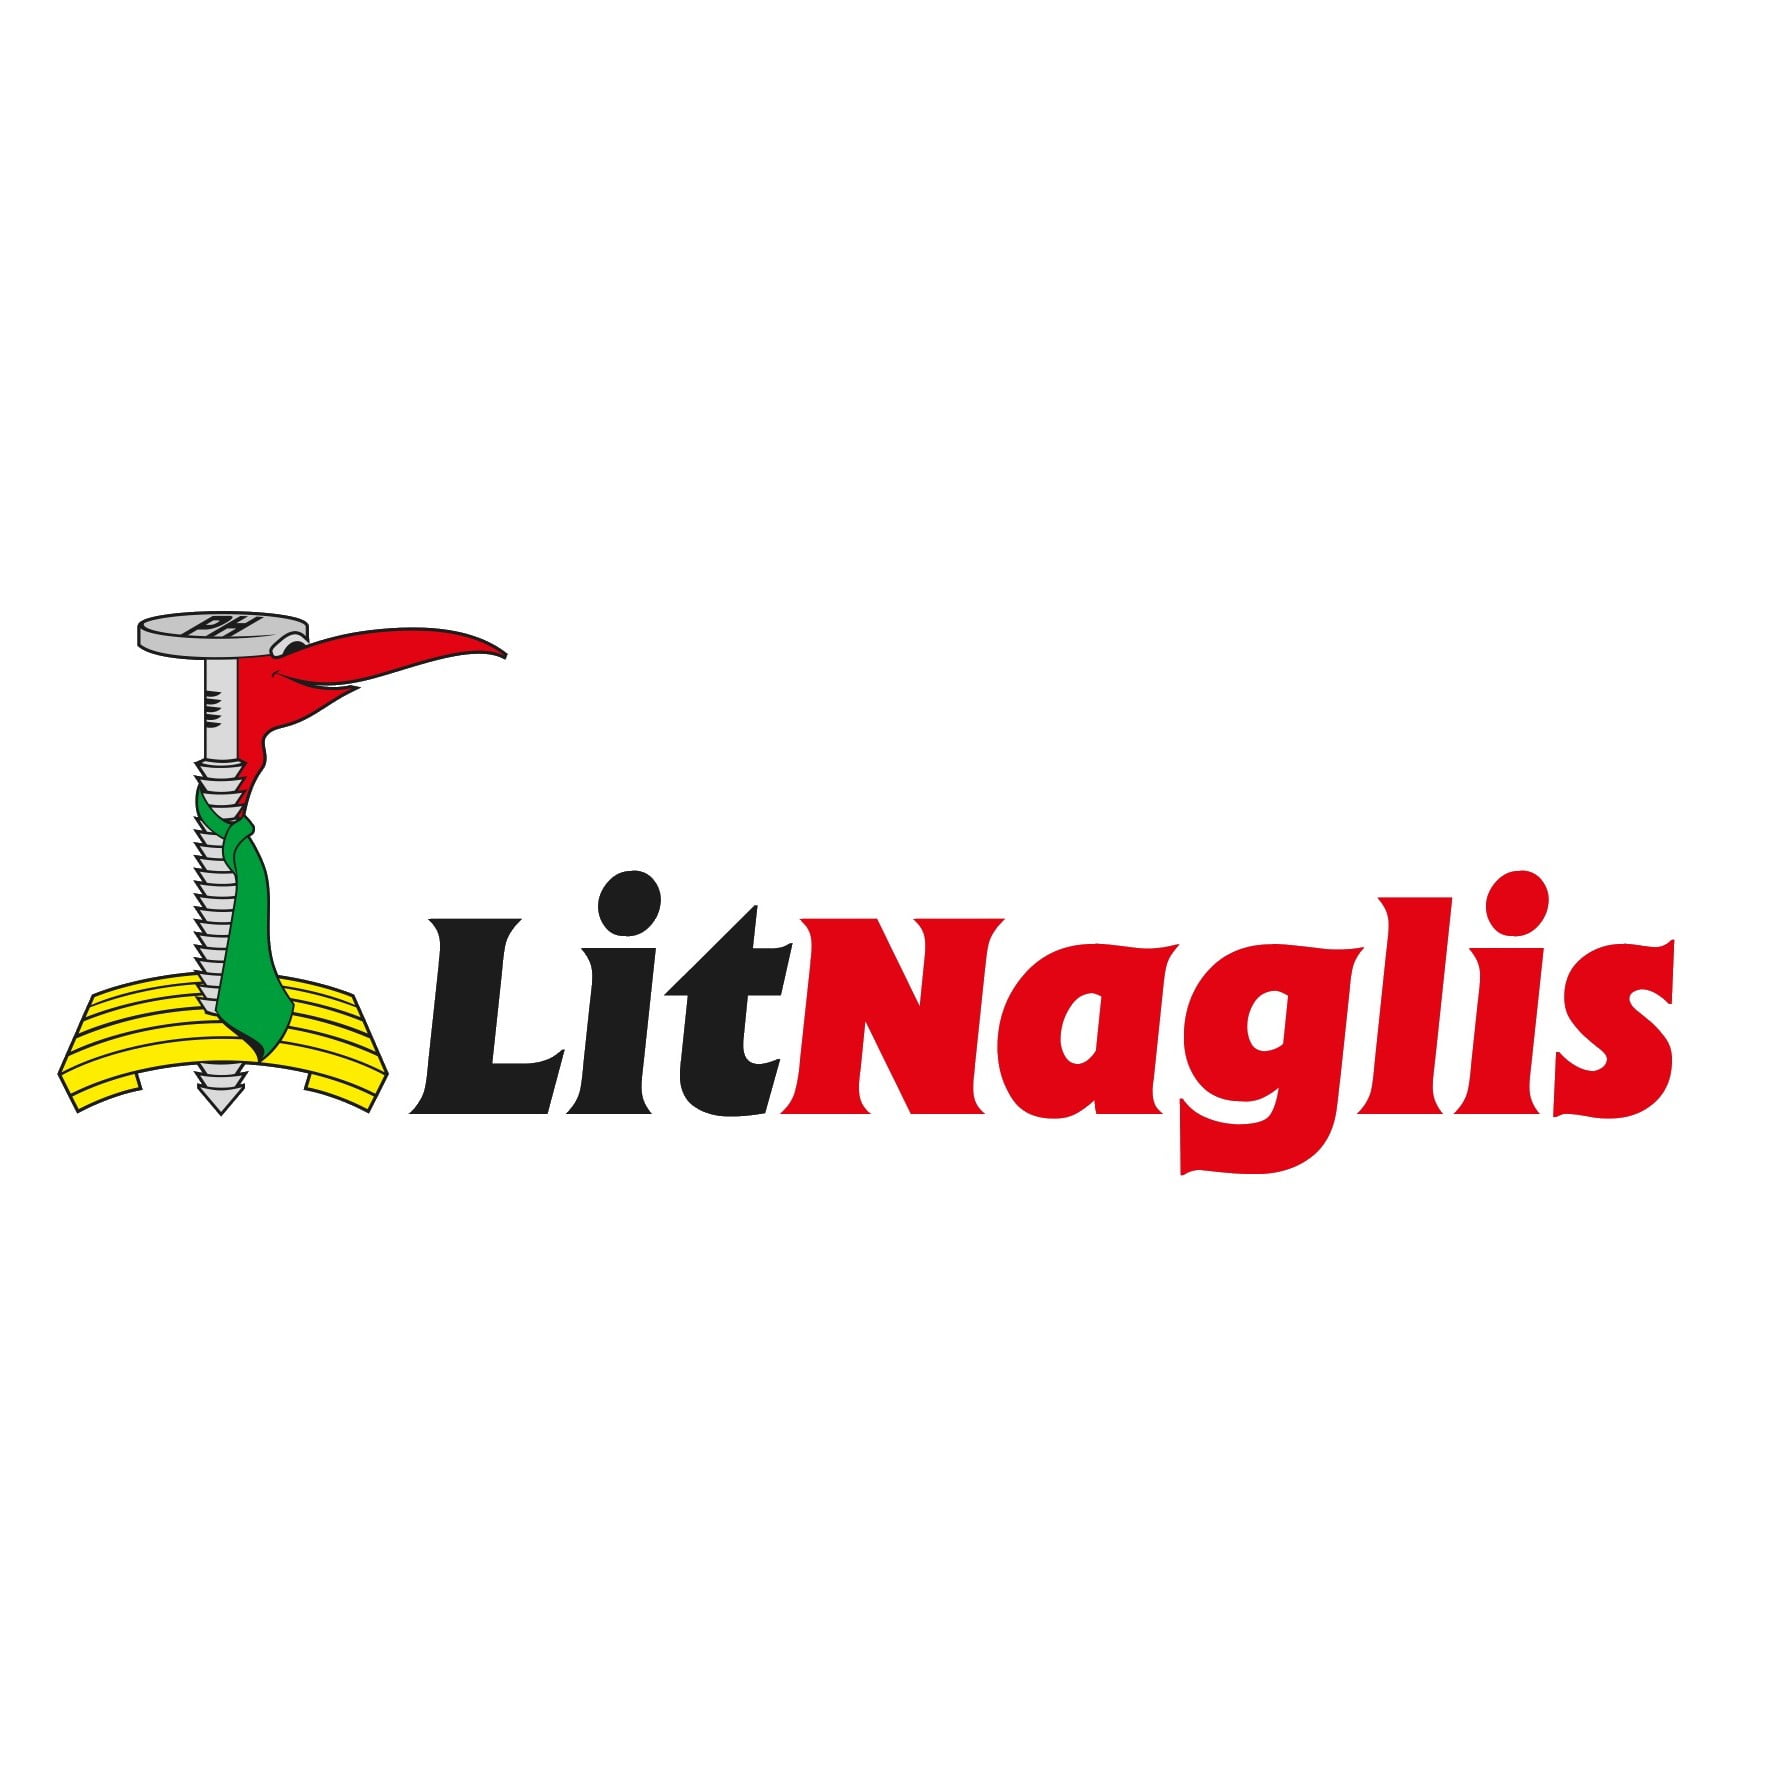 litnaglis_logo_wbg